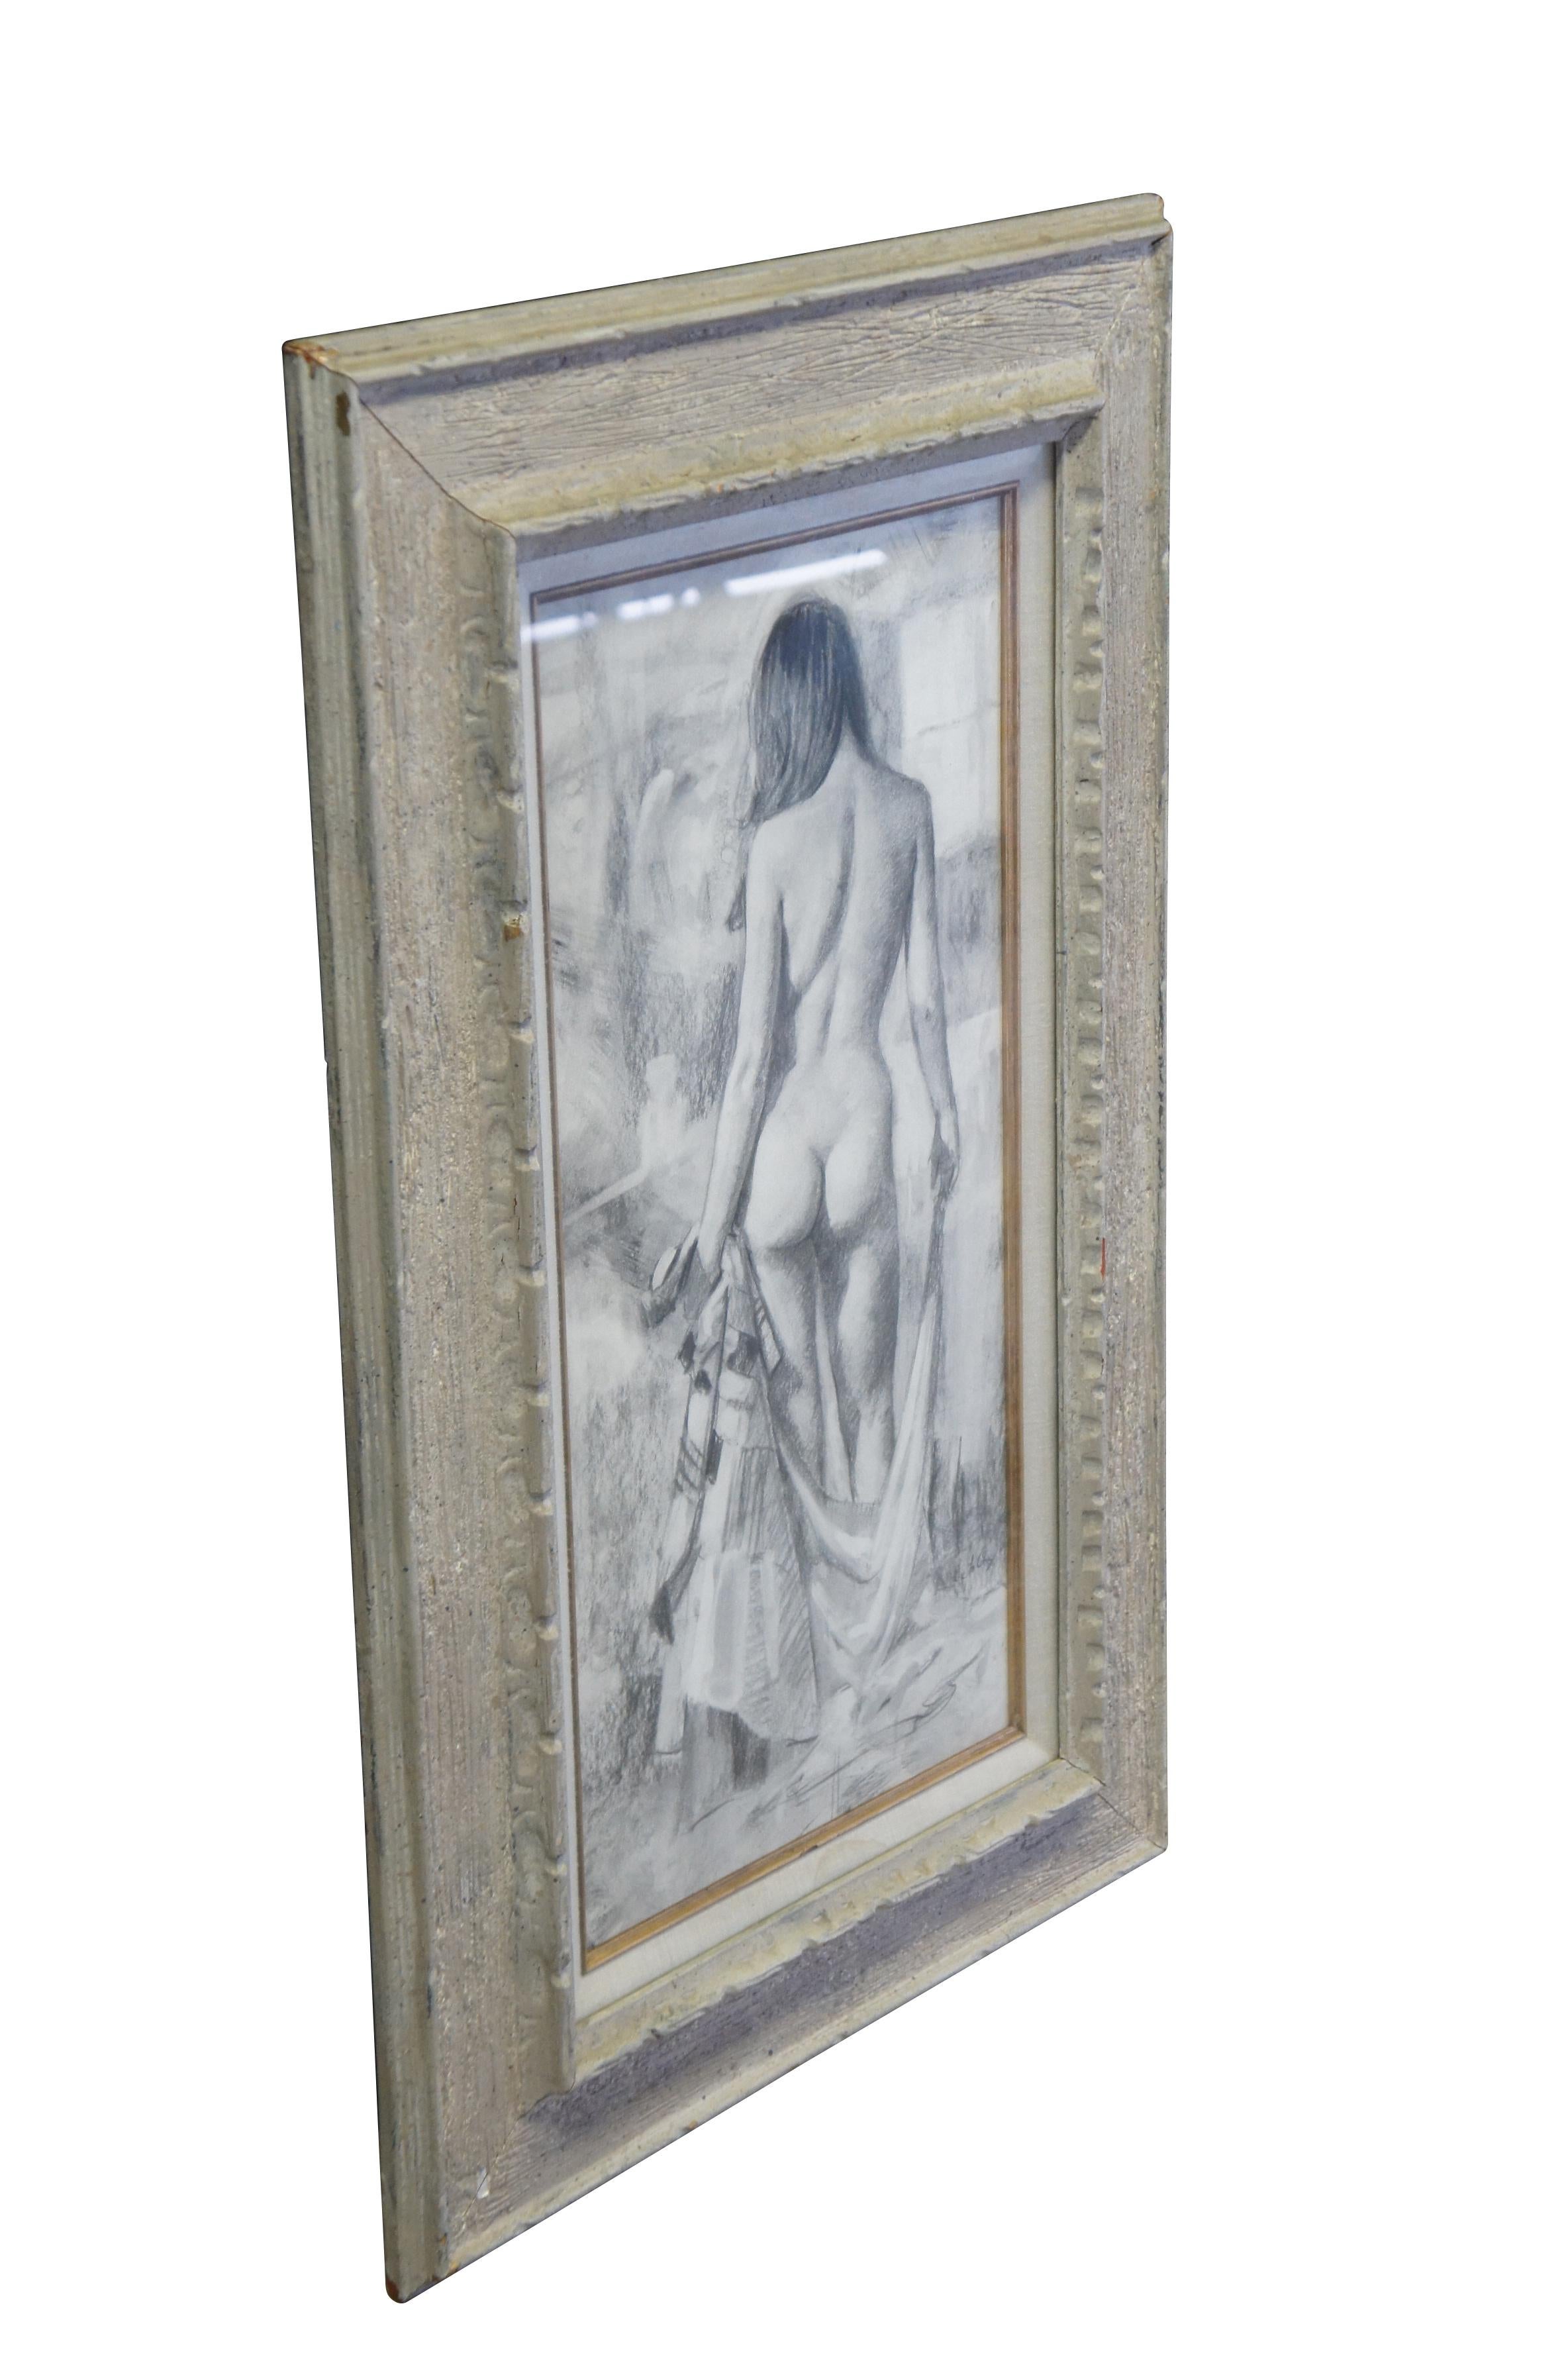 Vintage Jerry Del La Cruz dessin original au fusain sur papier intitulé Kavin, At Home.  Présente une femme nue en train de se déshabiller.  Vers 1974.

Jerry De La Cruz est originaire de Denver et maintient fermement son statut d'artiste